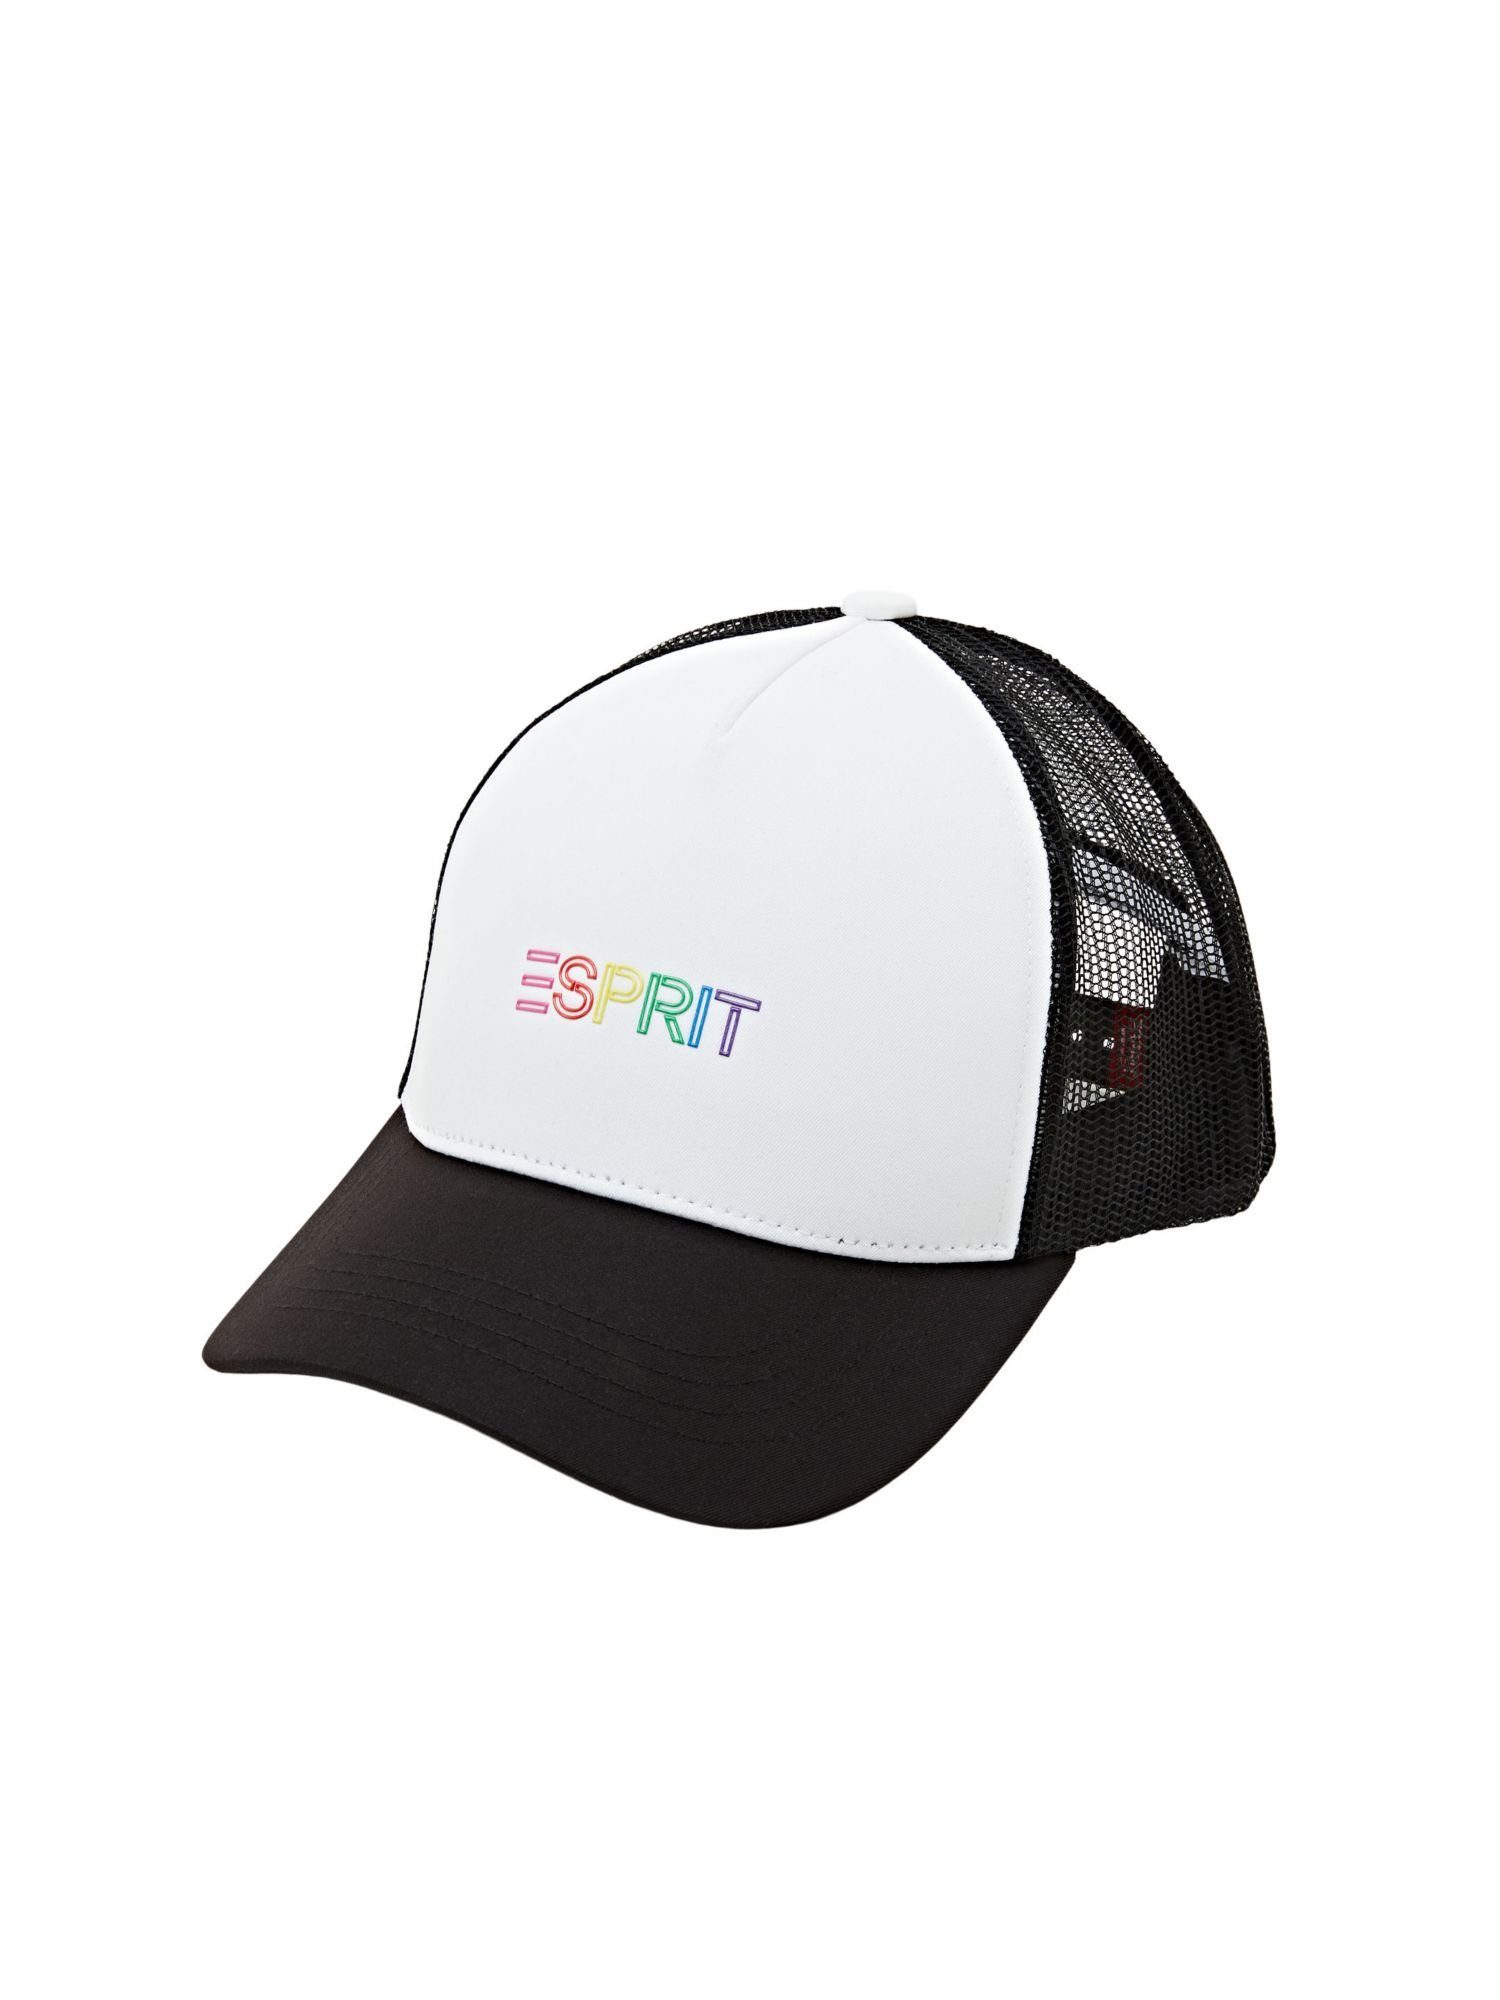 Baseball Esprit BLACK Cap Trucker-Cap